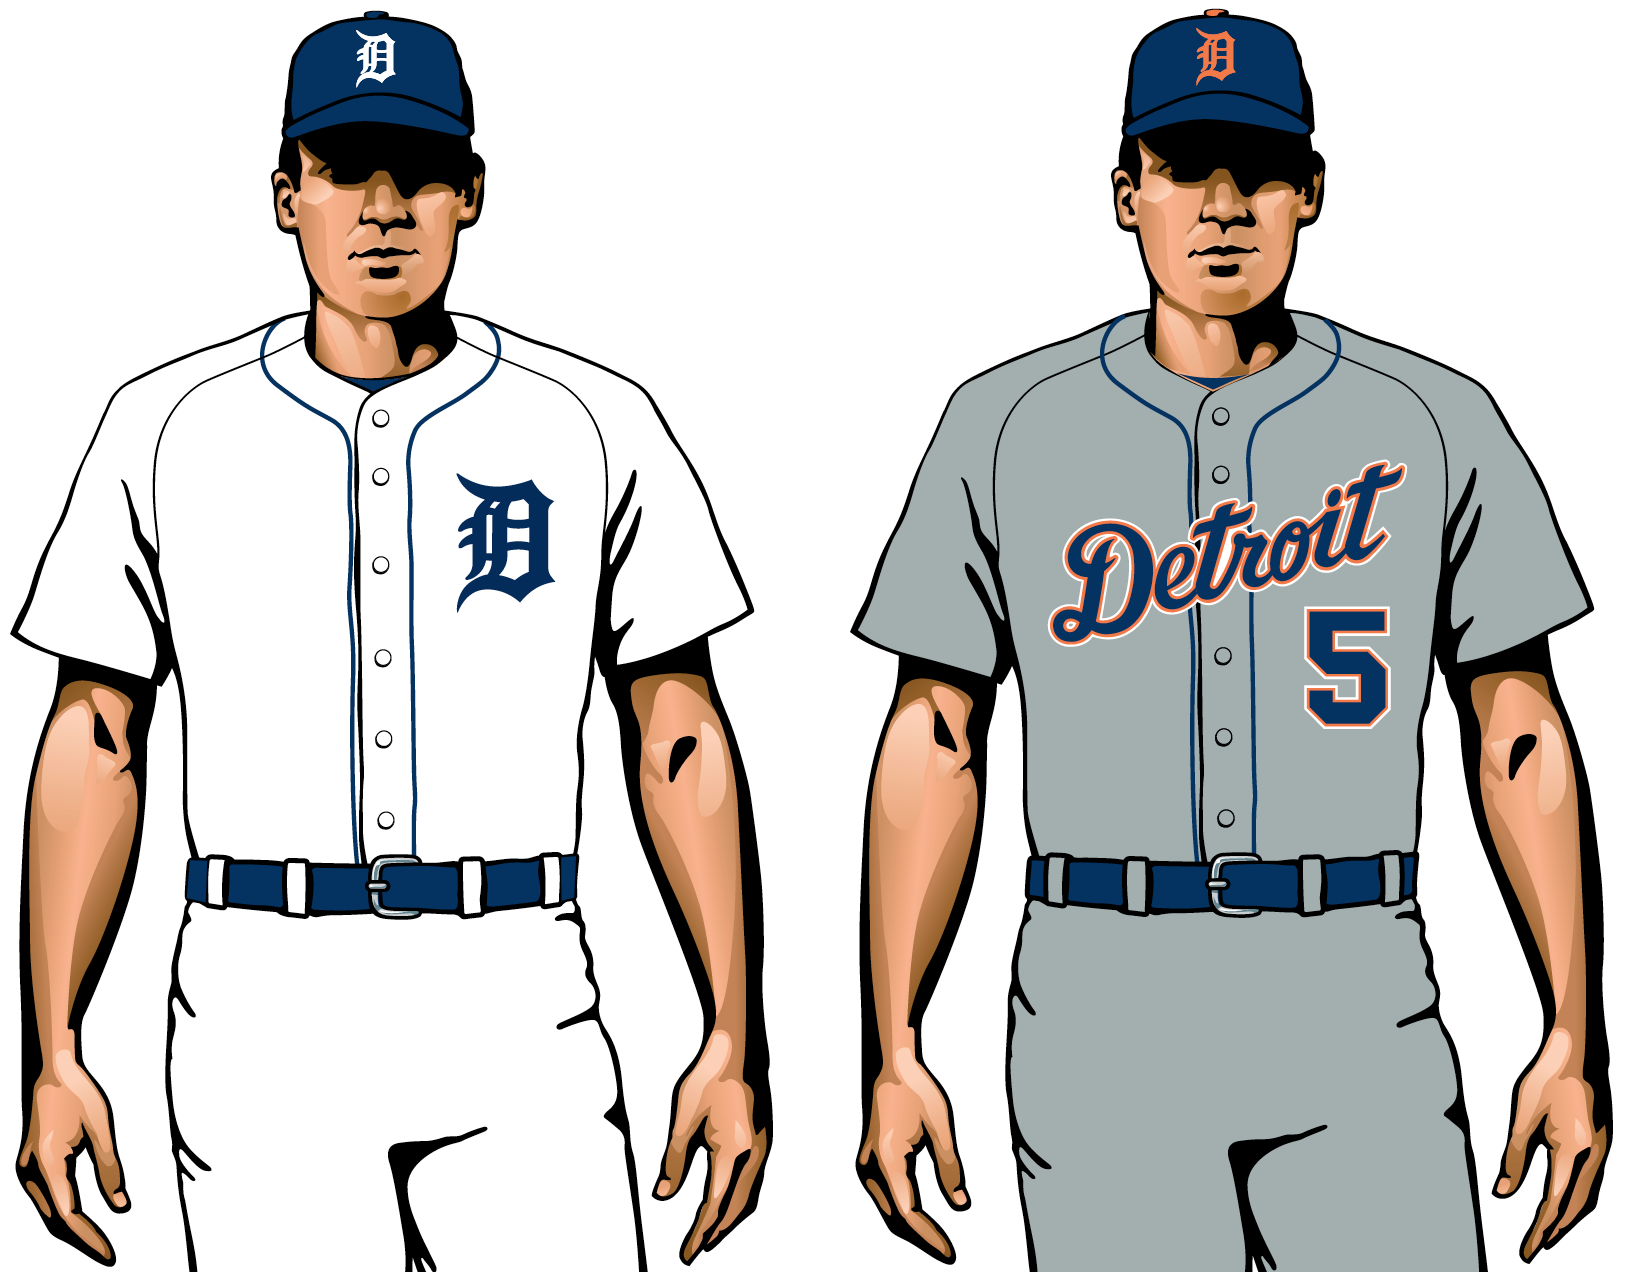 detroit tigers new uniforms